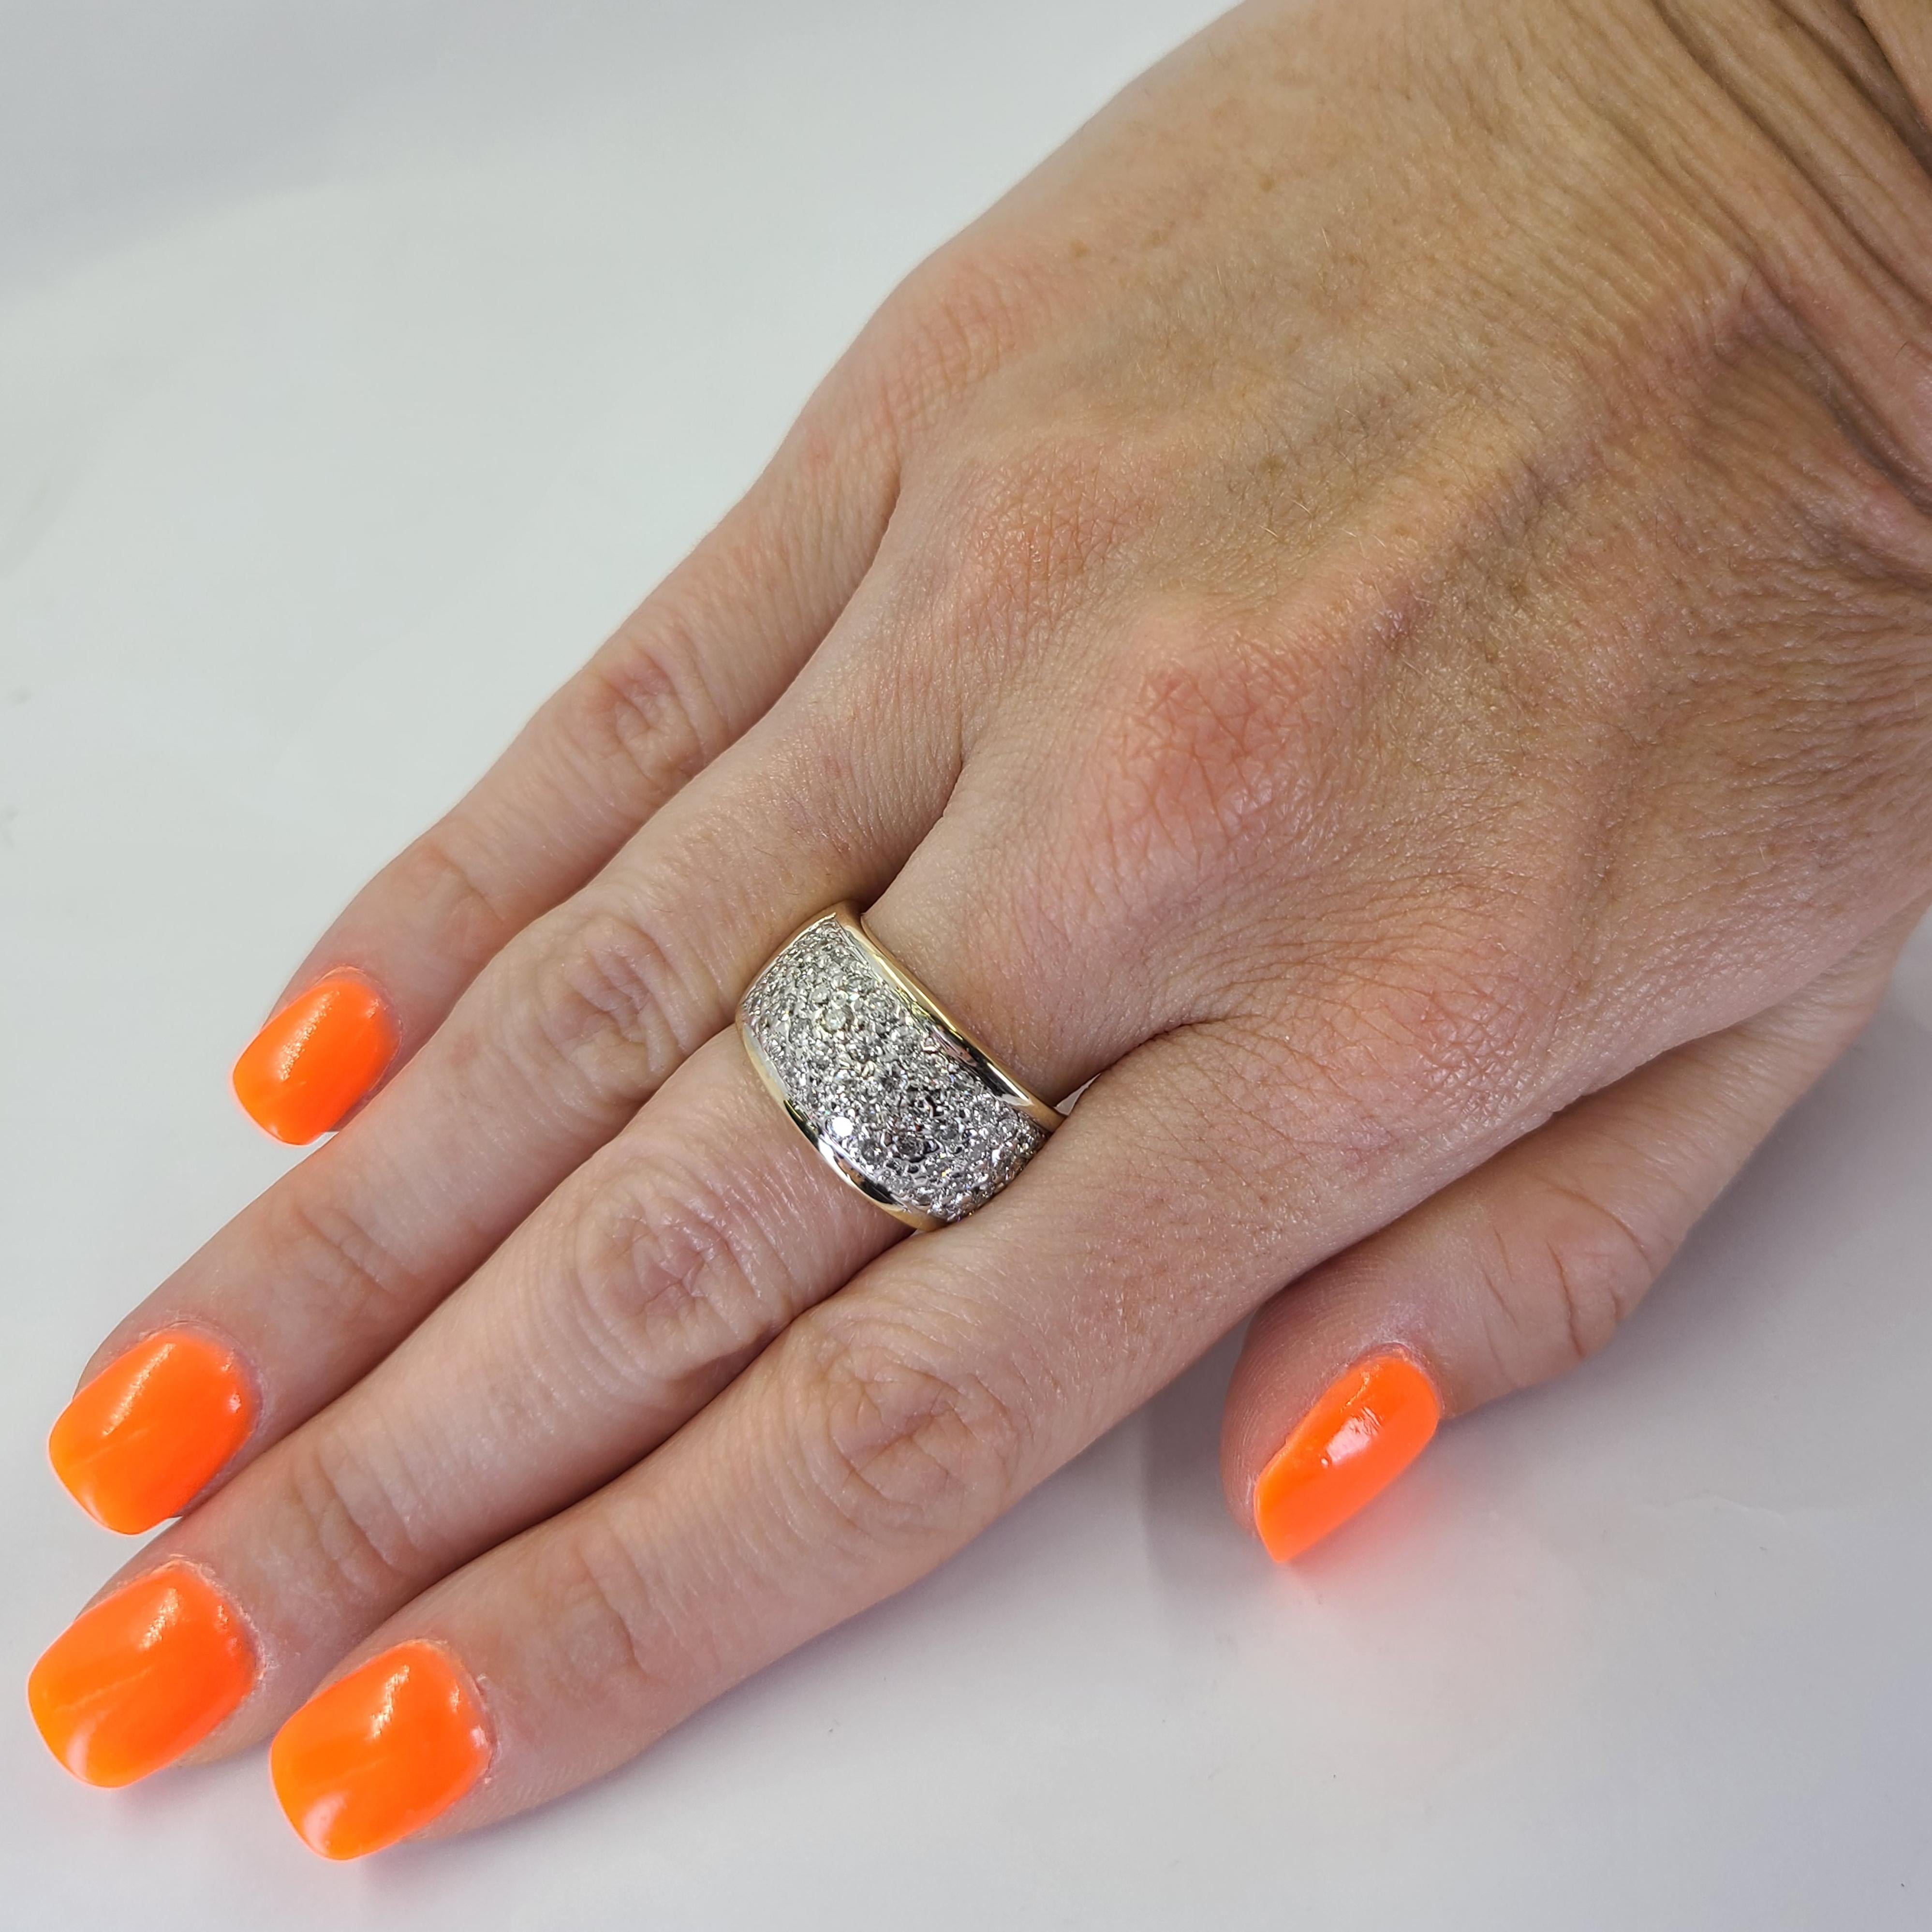 14 Karat Gelbgold Pave Diamond Band mit 54 runden Diamanten im Brillantschliff von VS Reinheit und H Farbe von insgesamt ca. 2,00 Karat. 11,5 mm breit, verjüngt sich auf 8,3 mm an der Rückseite. Fingergröße 6.5; Der Kauf beinhaltet einen